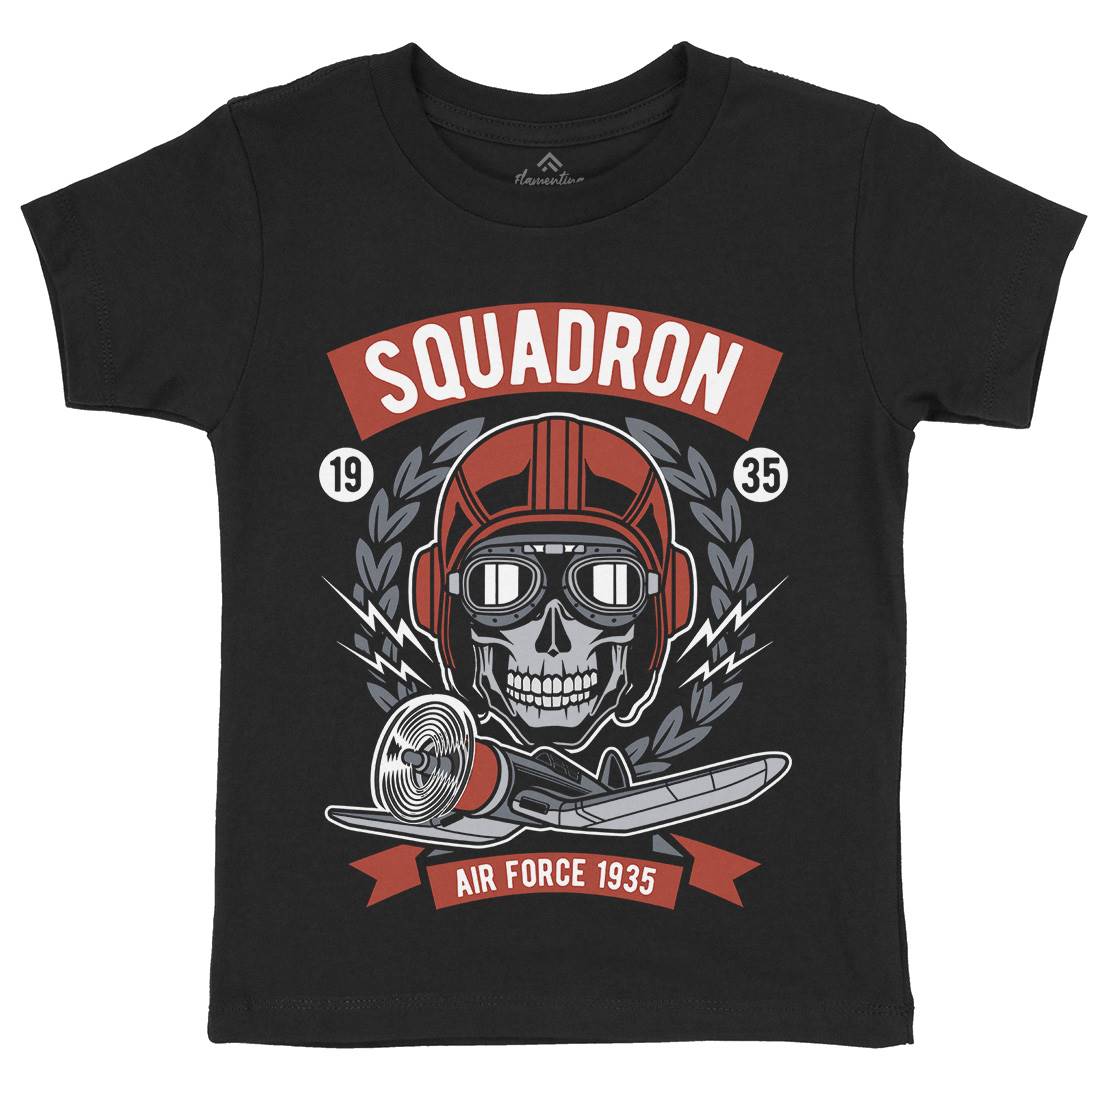 Squadron Air Force Kids Crew Neck T-Shirt Vehicles D583